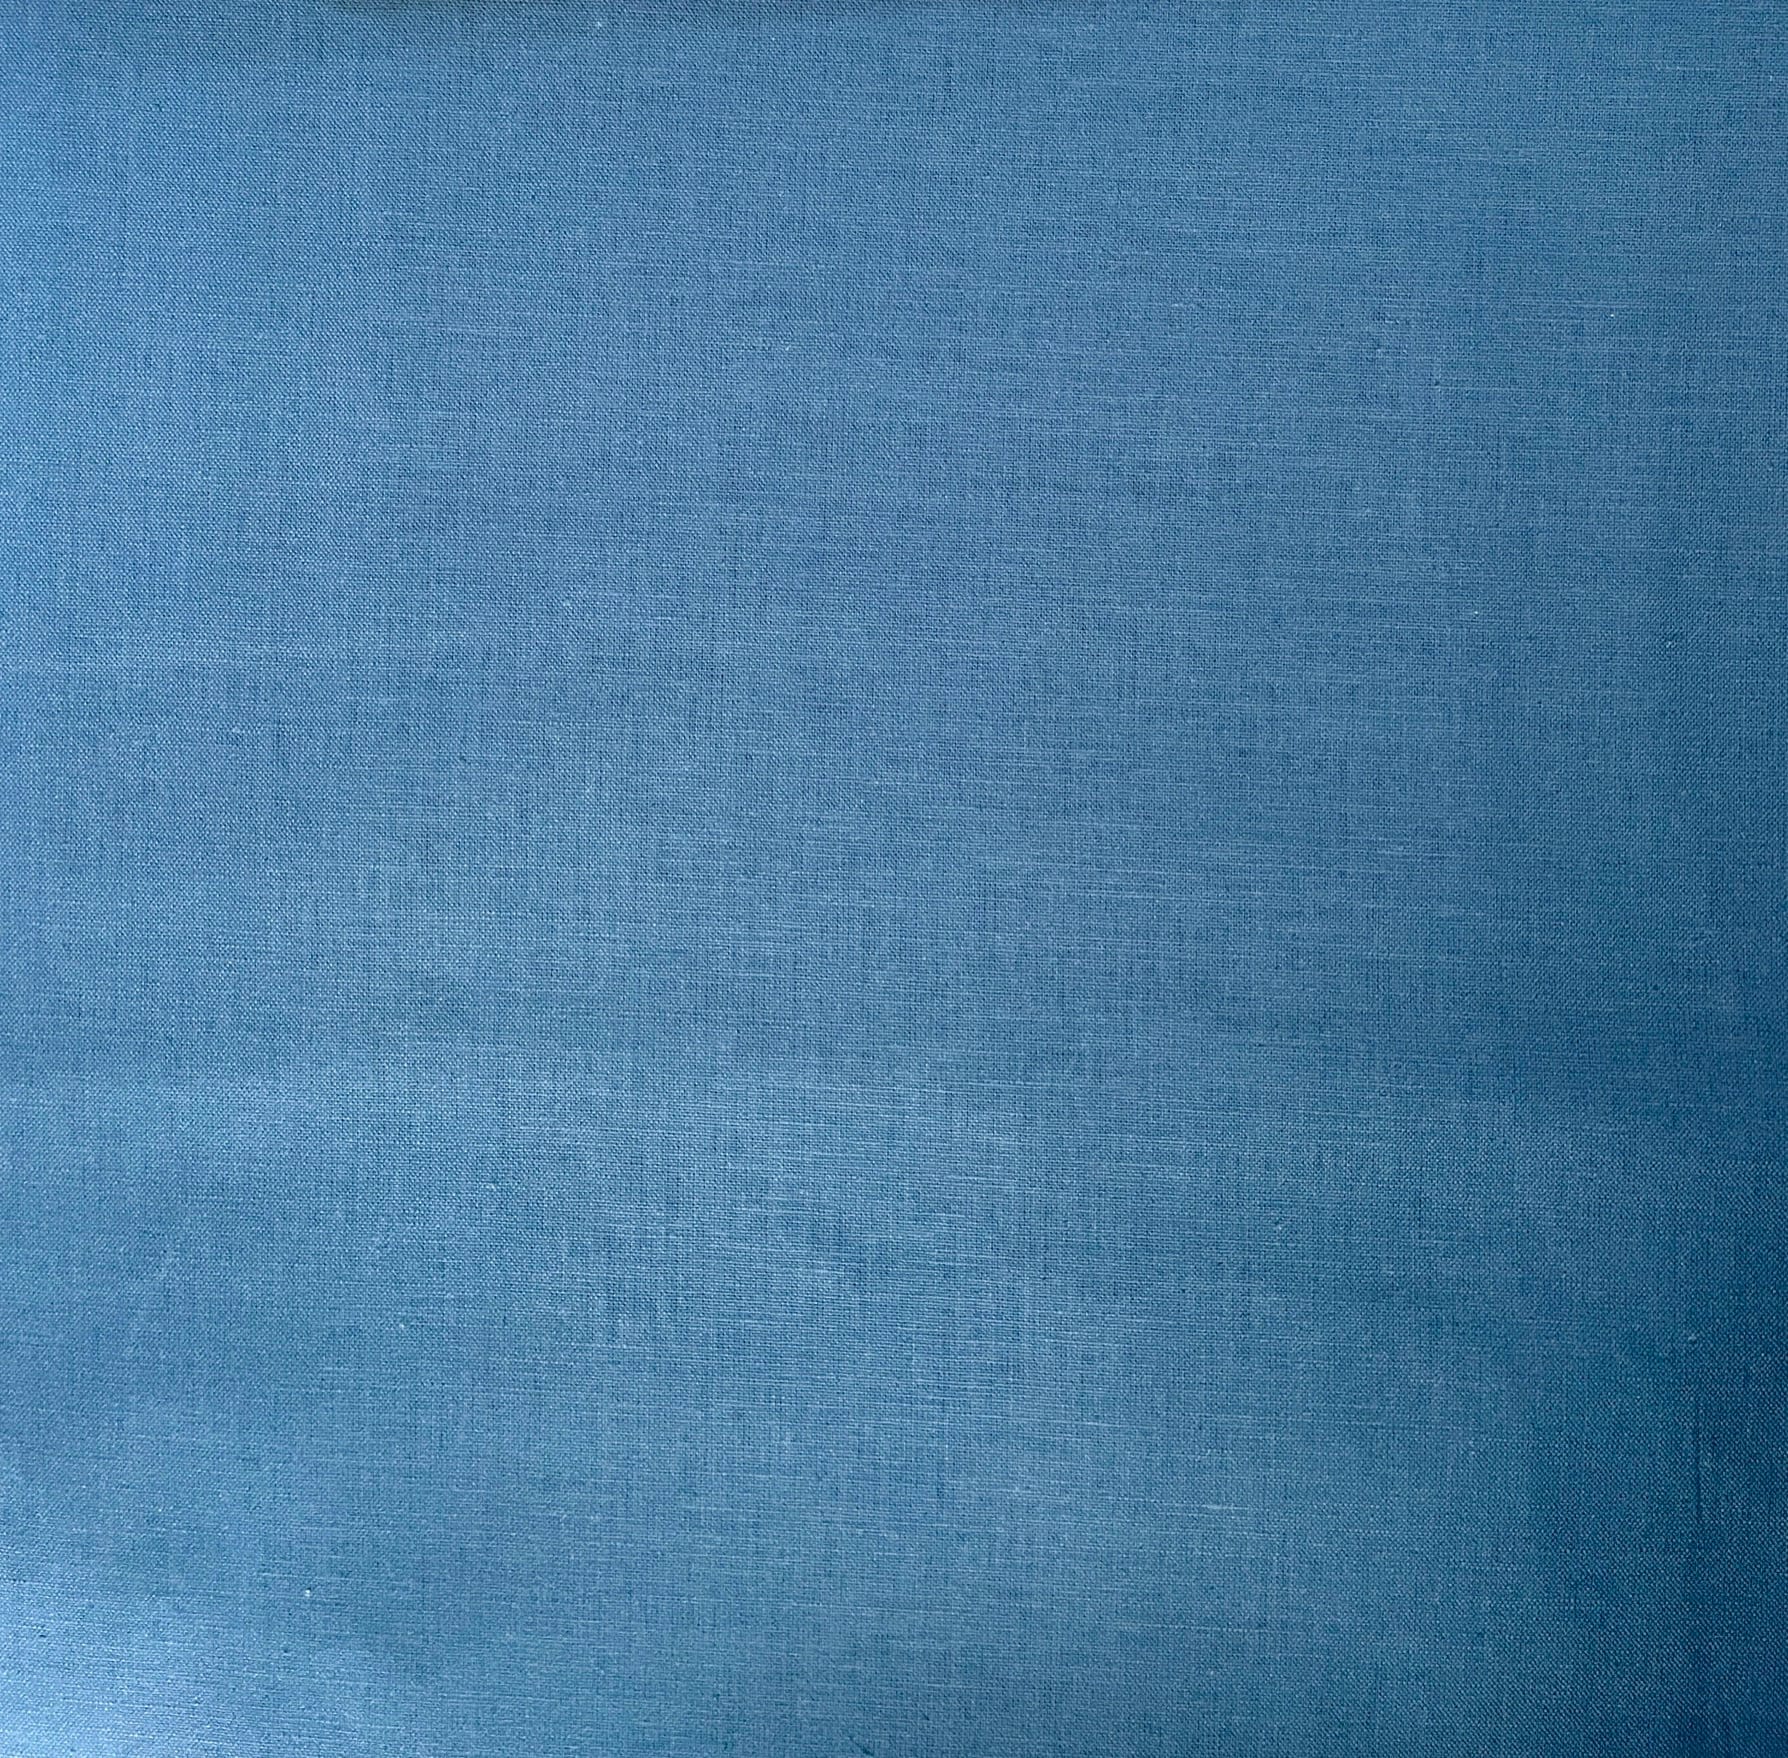 Blue Linen Fabric 